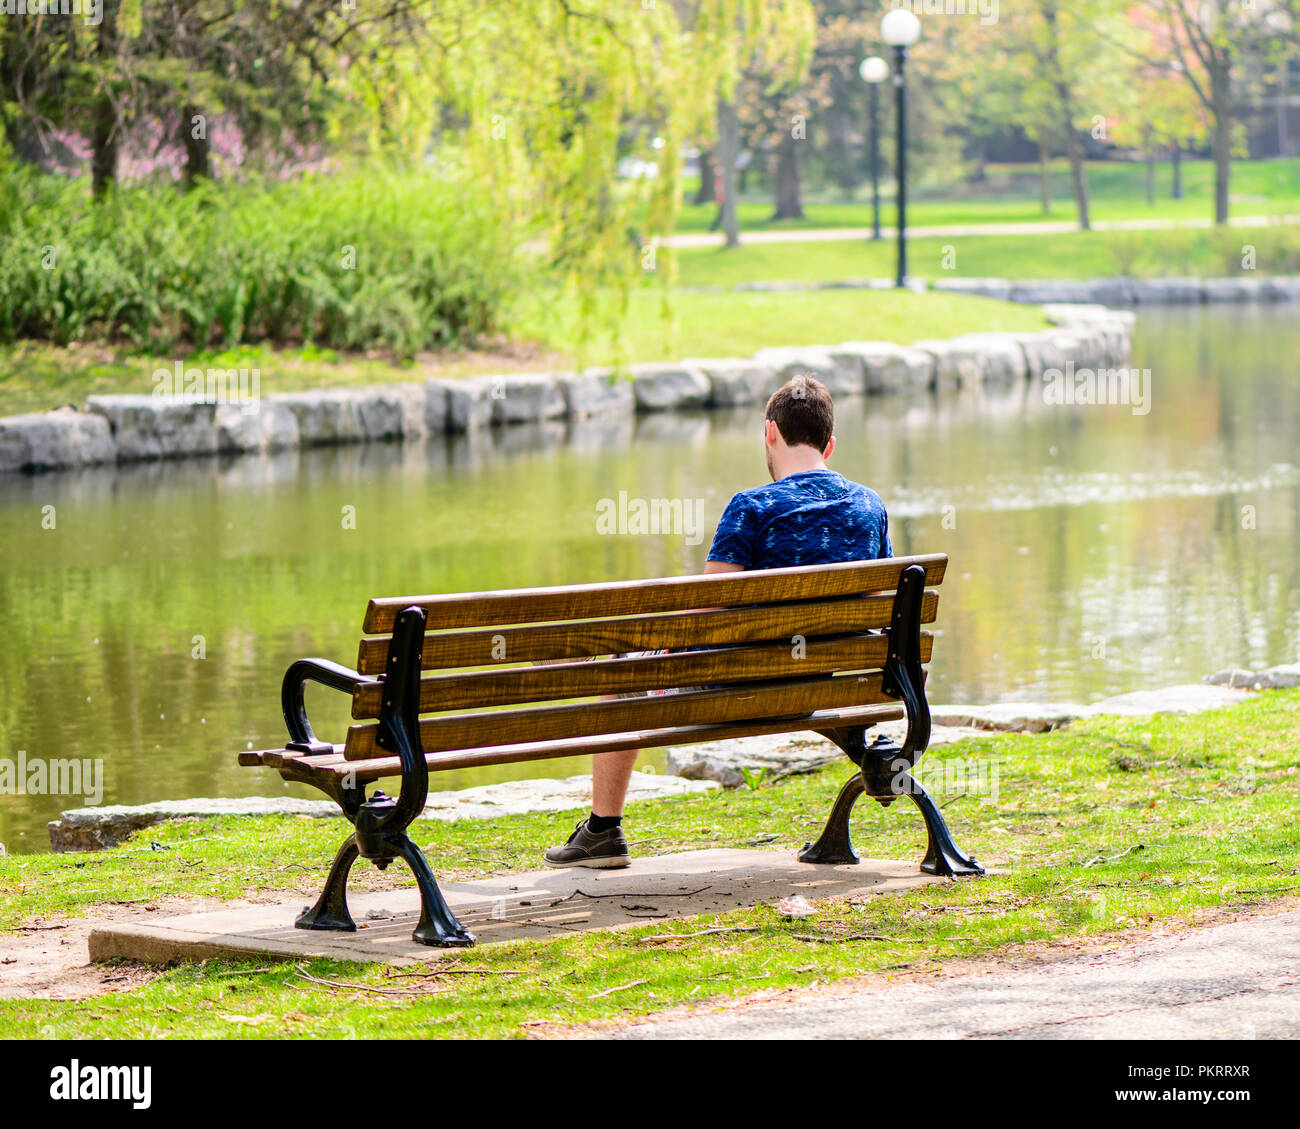 Hombre sentado en una banca del parque cerca de un río con árboles en el fondo Foto de stock